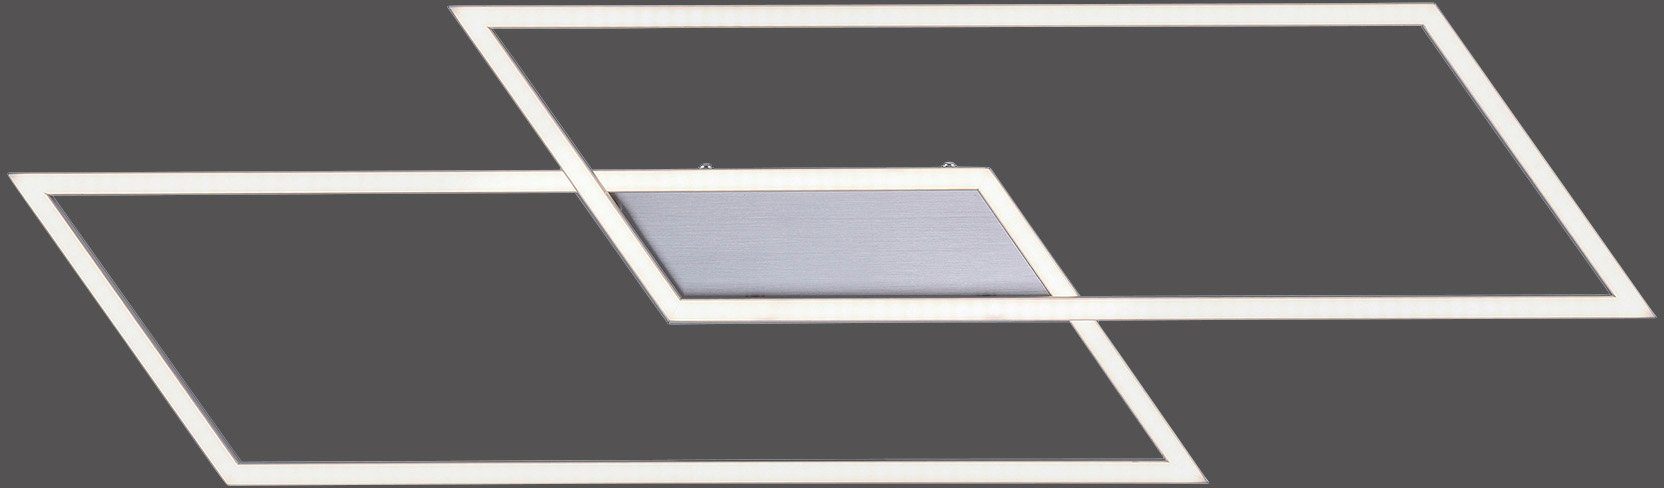 LED Neuhaus fest integriert, Inigo, Dimmfunktion, Paul dimmbar über Warmweiß, Stufenlos Deckenleuchte vorhandenen Wandschalter LED